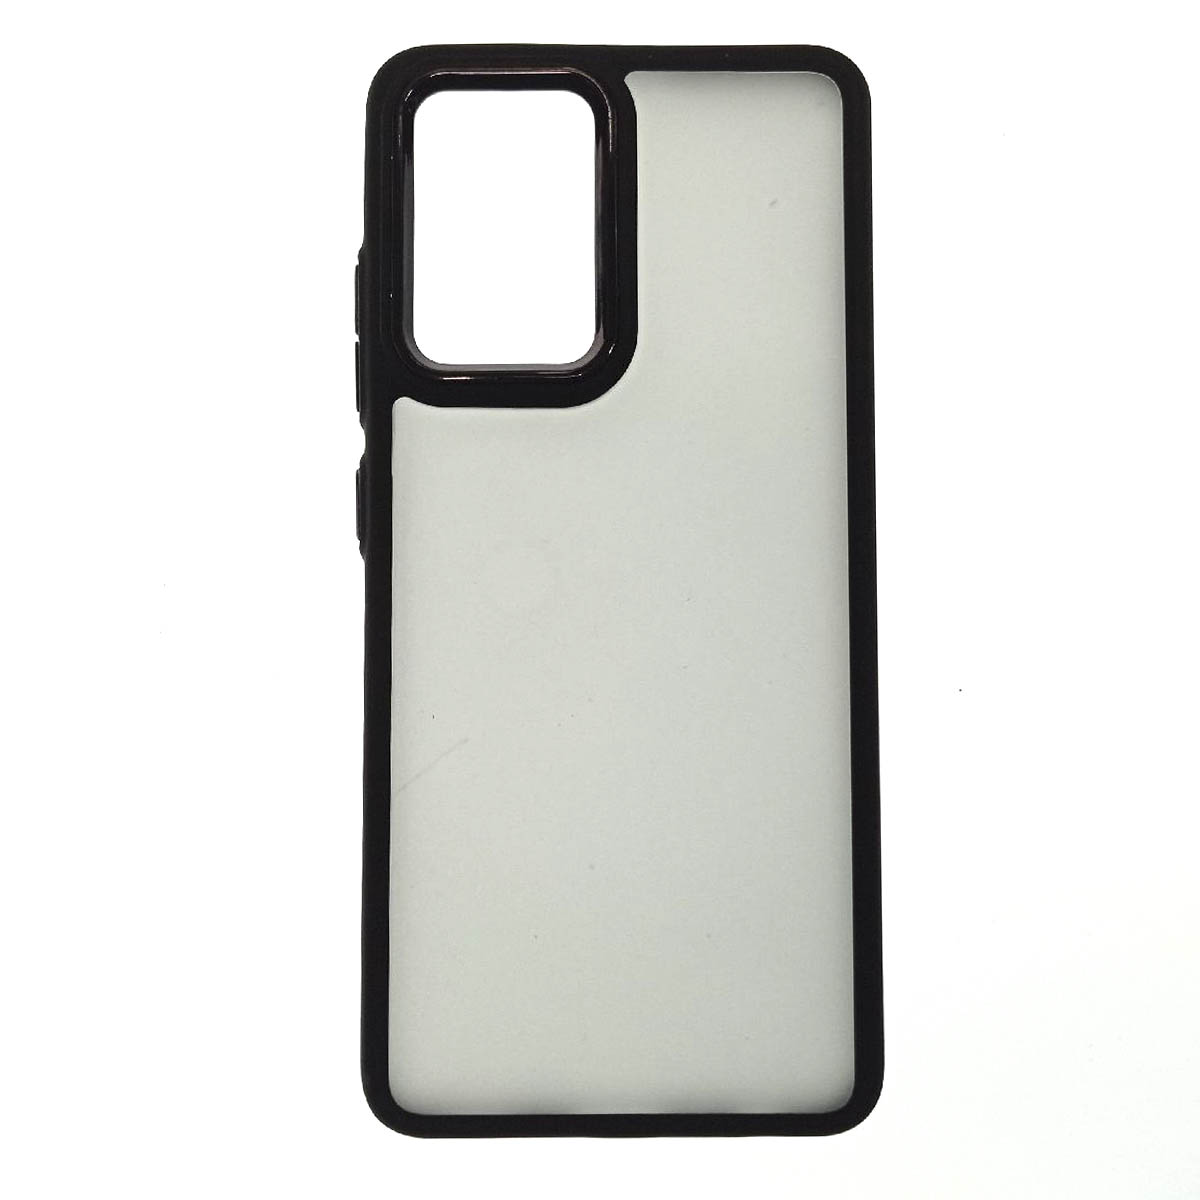 Чехол накладка для SAMSUNG Galaxy A32, силикон, пластик, цвет окантовки черный